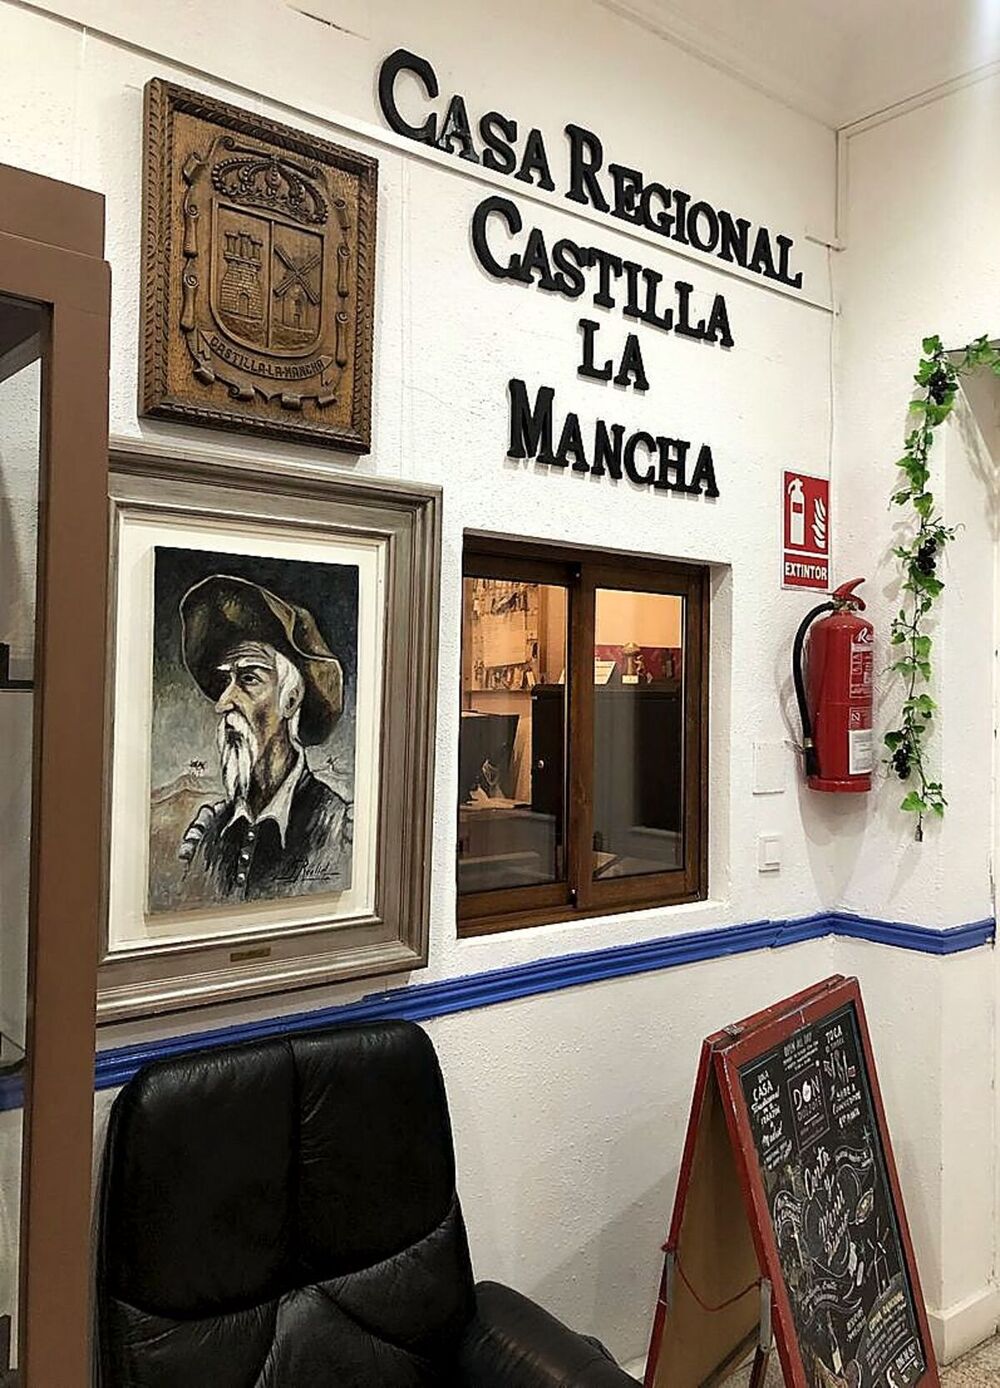 A la entrada, un gran letrero y un cuadro de Don Quijote dan la bienvenida. 